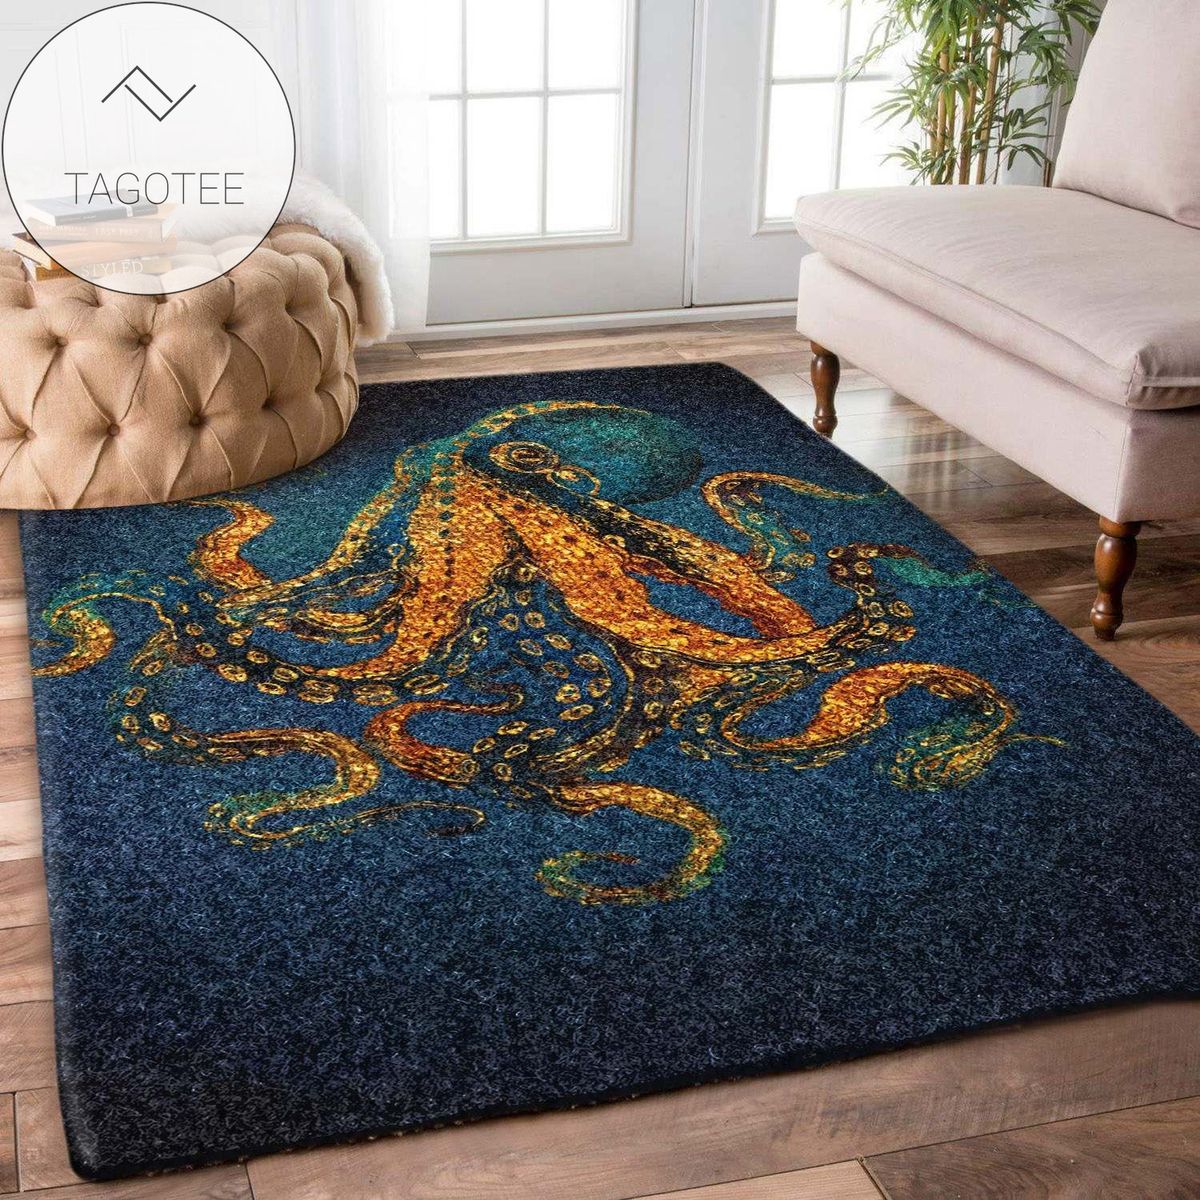 Octopus Rug Carpet